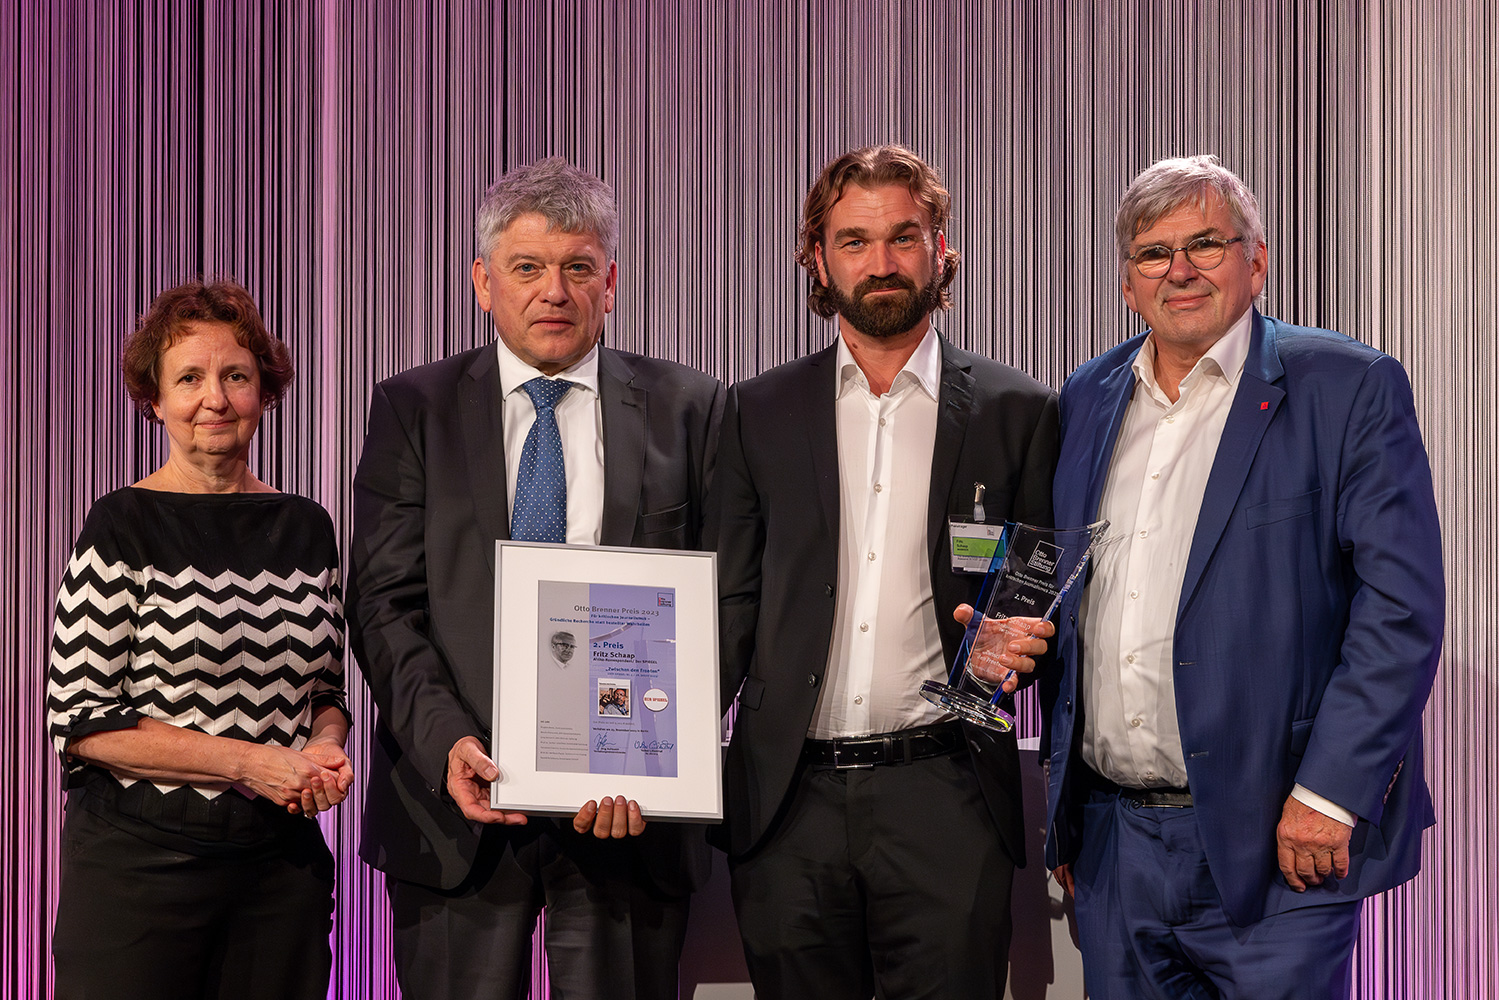 Fritz Schaap gewinnt den 2. Otto Brenner Preis. Hier zusammen mit Brigitte Baetz, Jupp Legrand und Jörg Hofmann.